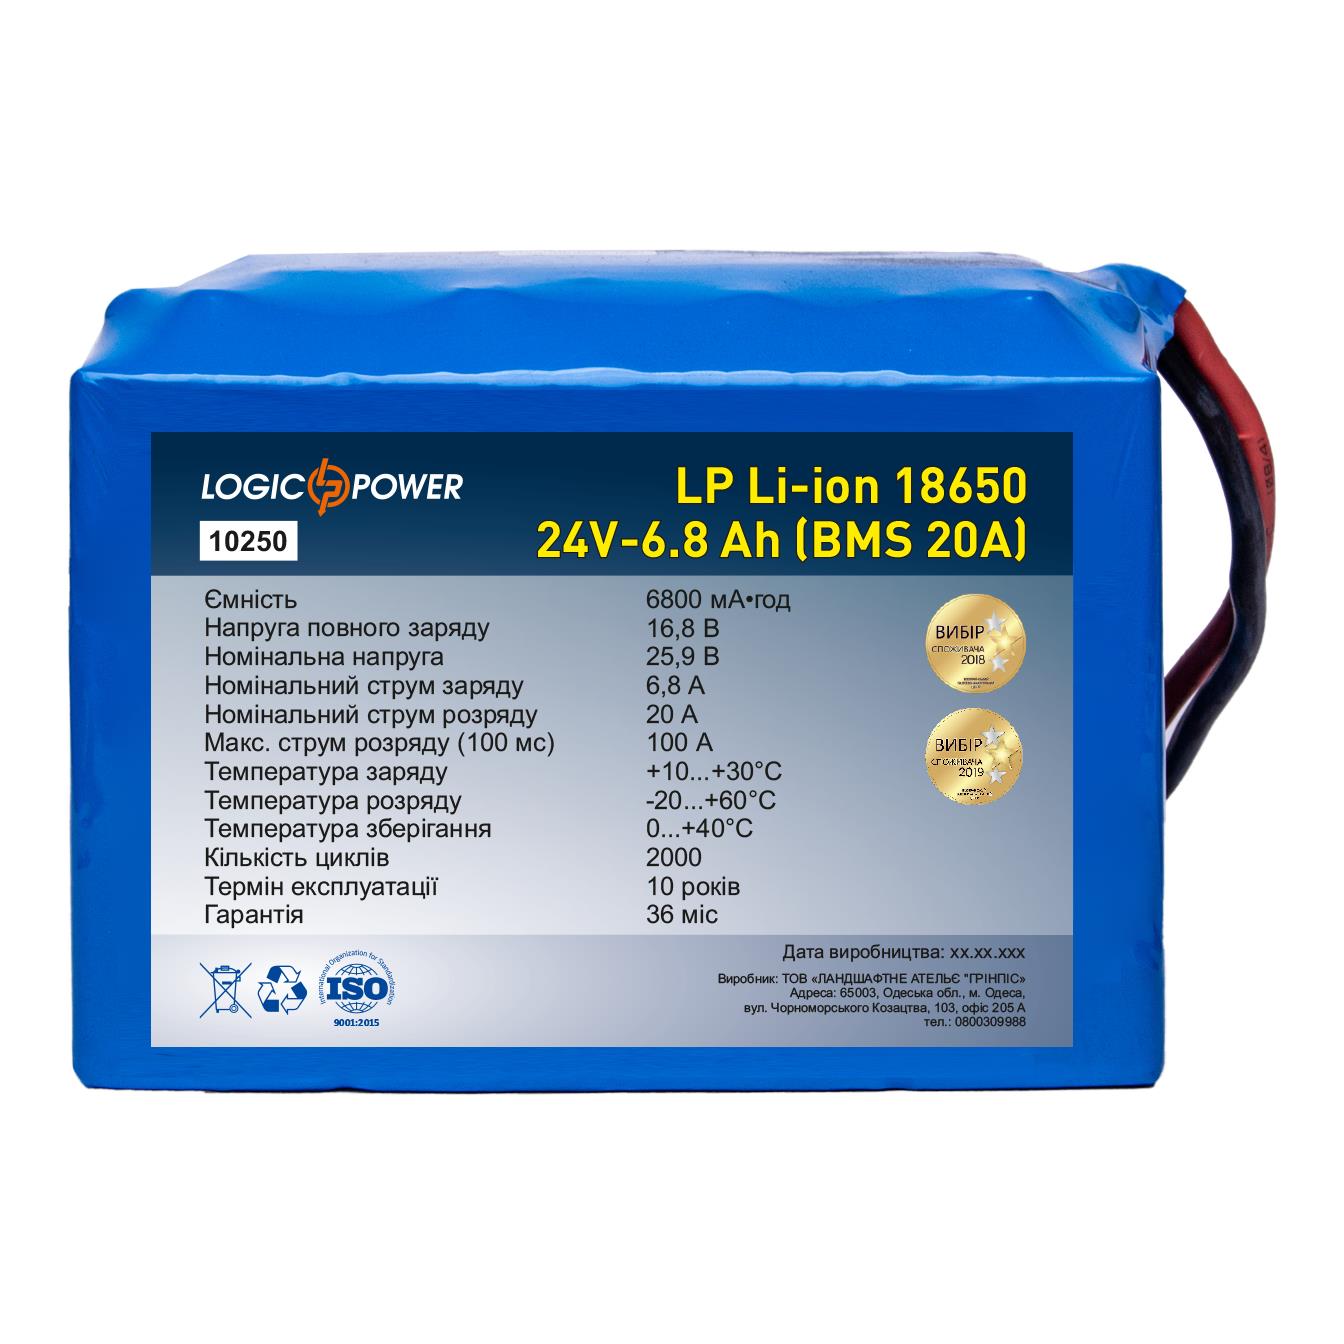 Акумулятор літій-іонний LogicPower LP Li-ion 18650 24V - 6.8 Ah (BMS 20A) (10250)